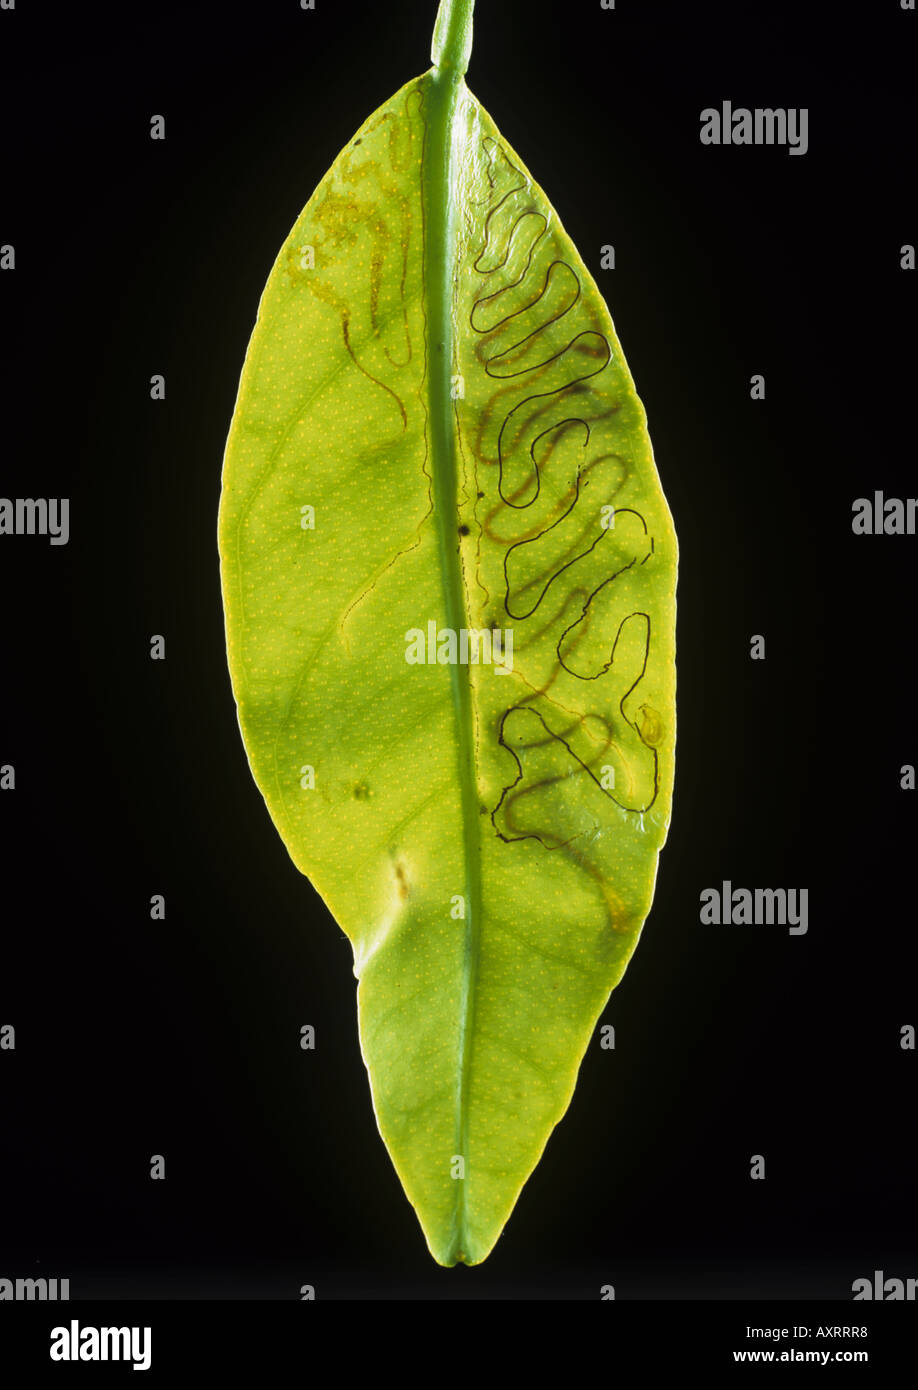 Citrus leafminer Phllocnistis citrella leaf mines in a conservatory grown lemon s leaf Stock Photo